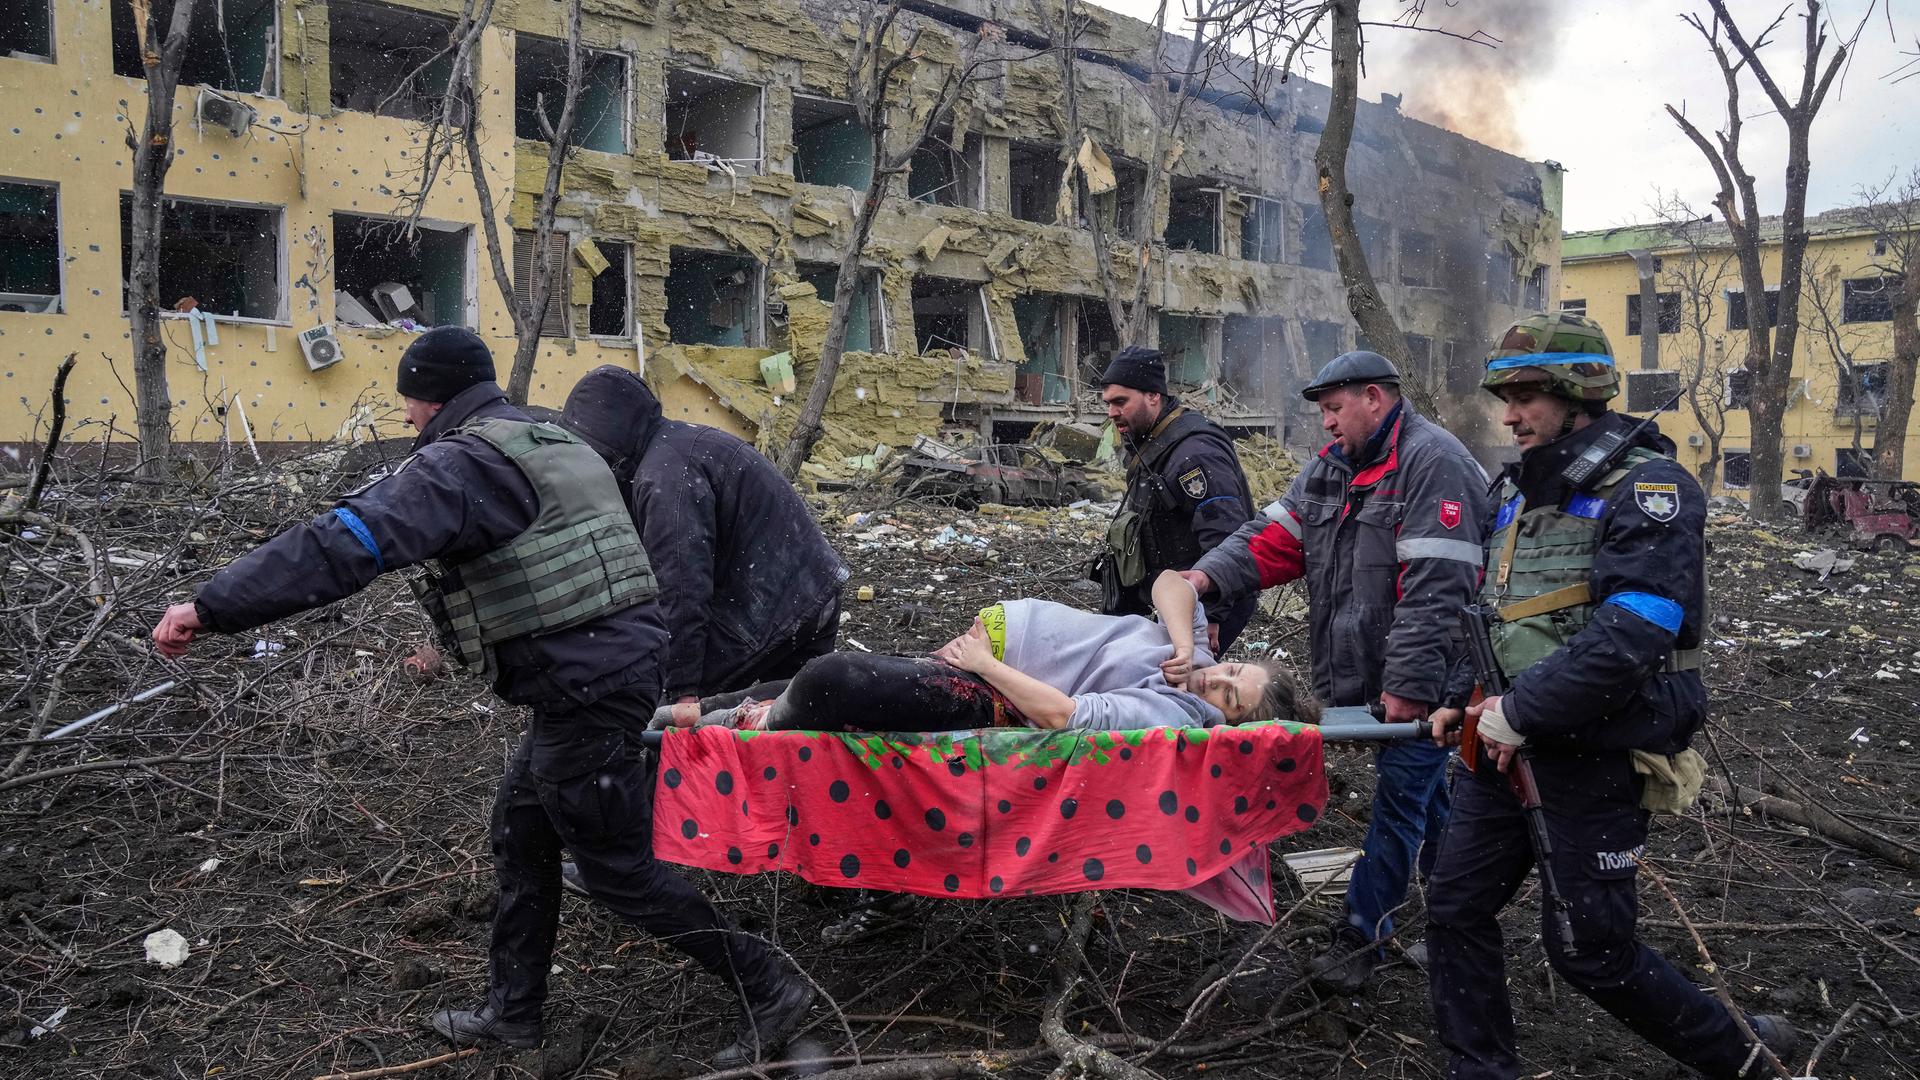 Fünf Männer, darunter ein Soldat, transportieren eine schwangere Frau auf einer Trage an dem zerstörten Gebäude vorbei durch einen ebenso zerstören Garten. Sie hält ihre Hand auf eine blutende Wunde am Bauch.